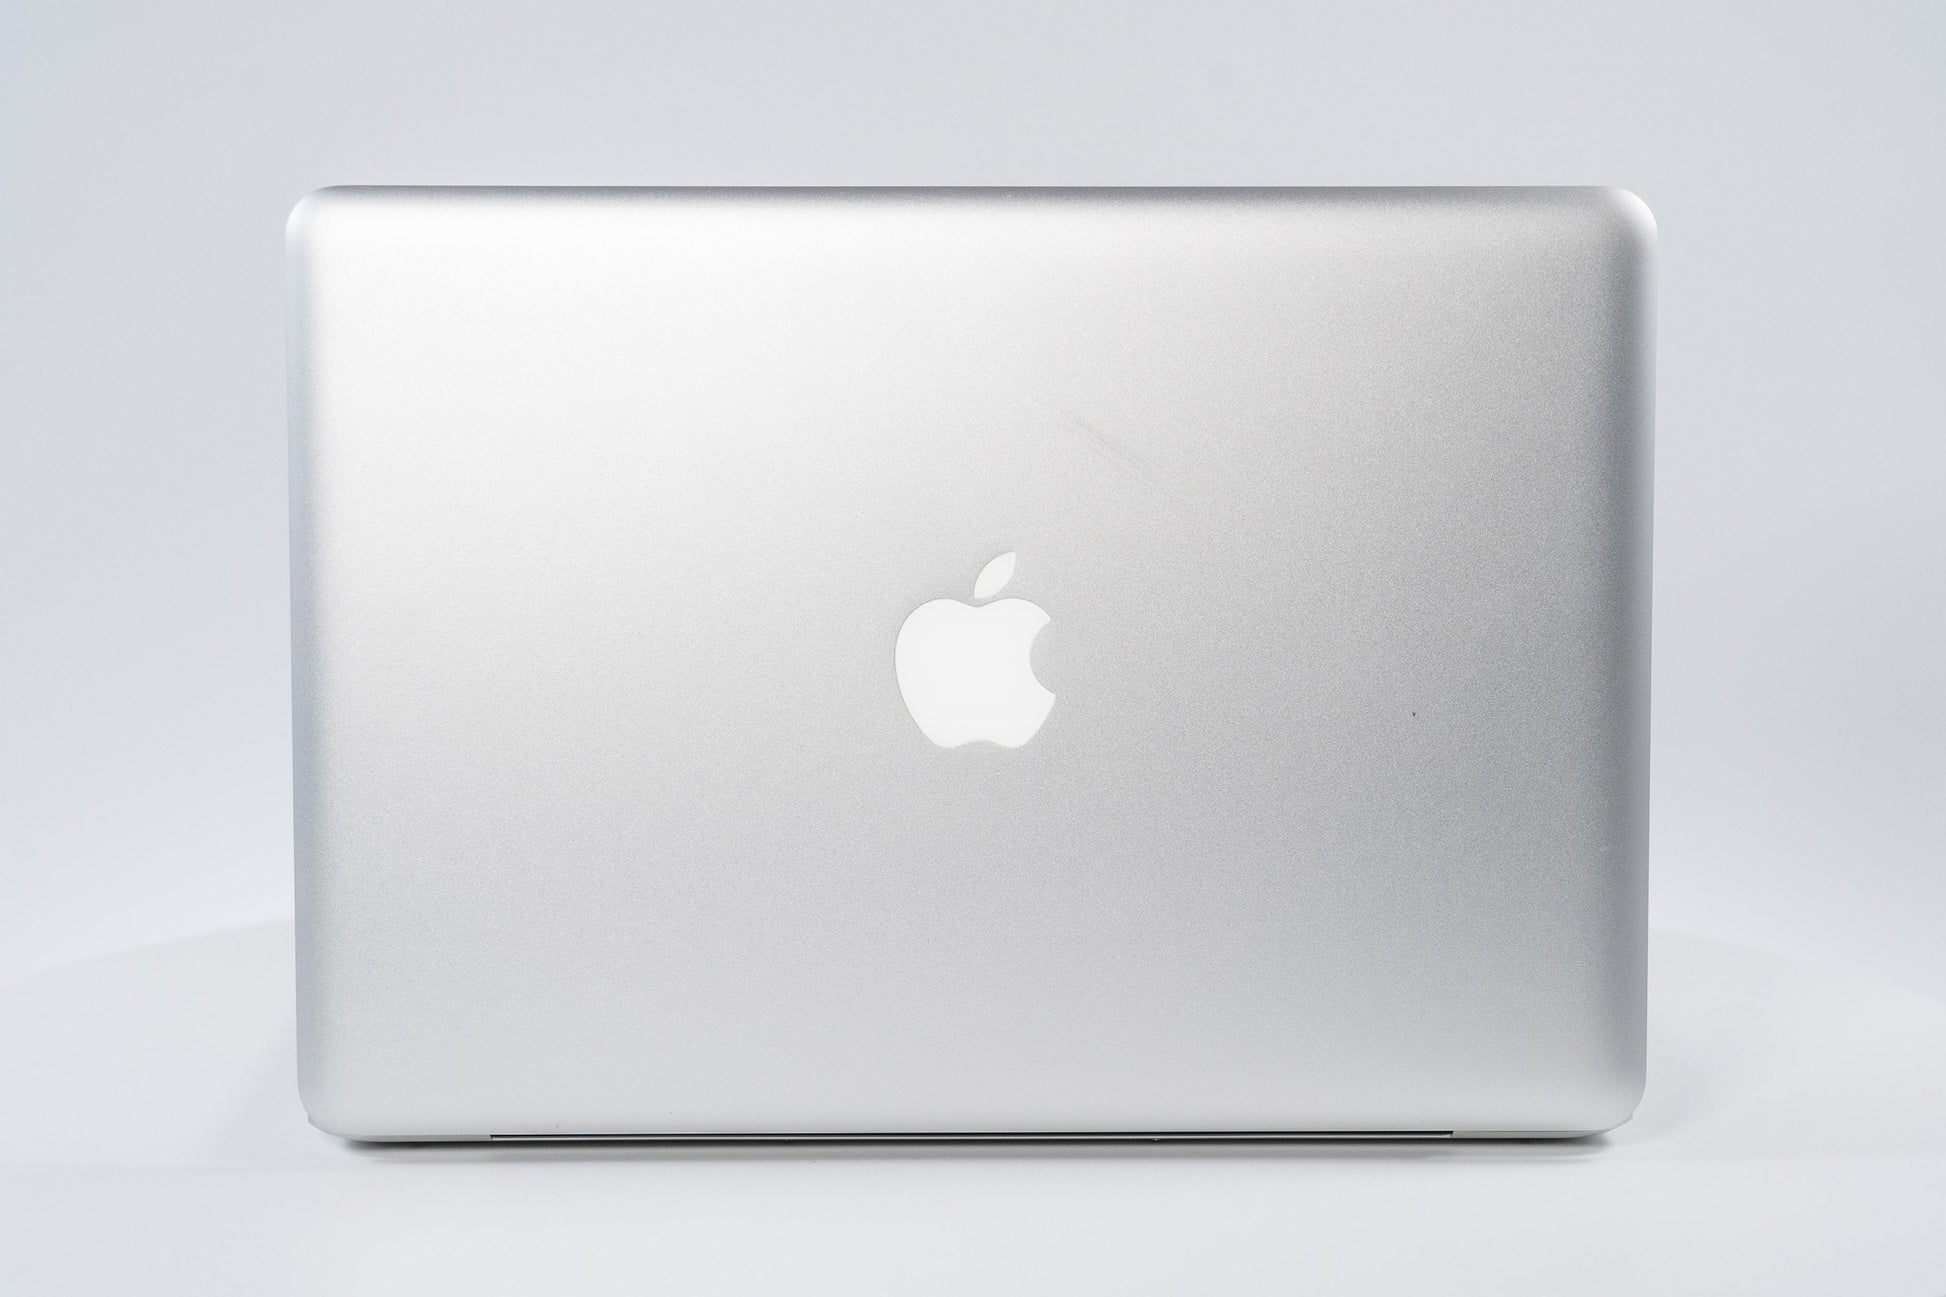 Apple MacBook Pro (15-inch Early 2011) 2.2 GHz intel i7-2720QM 4GB 750GB HDD (Silver)